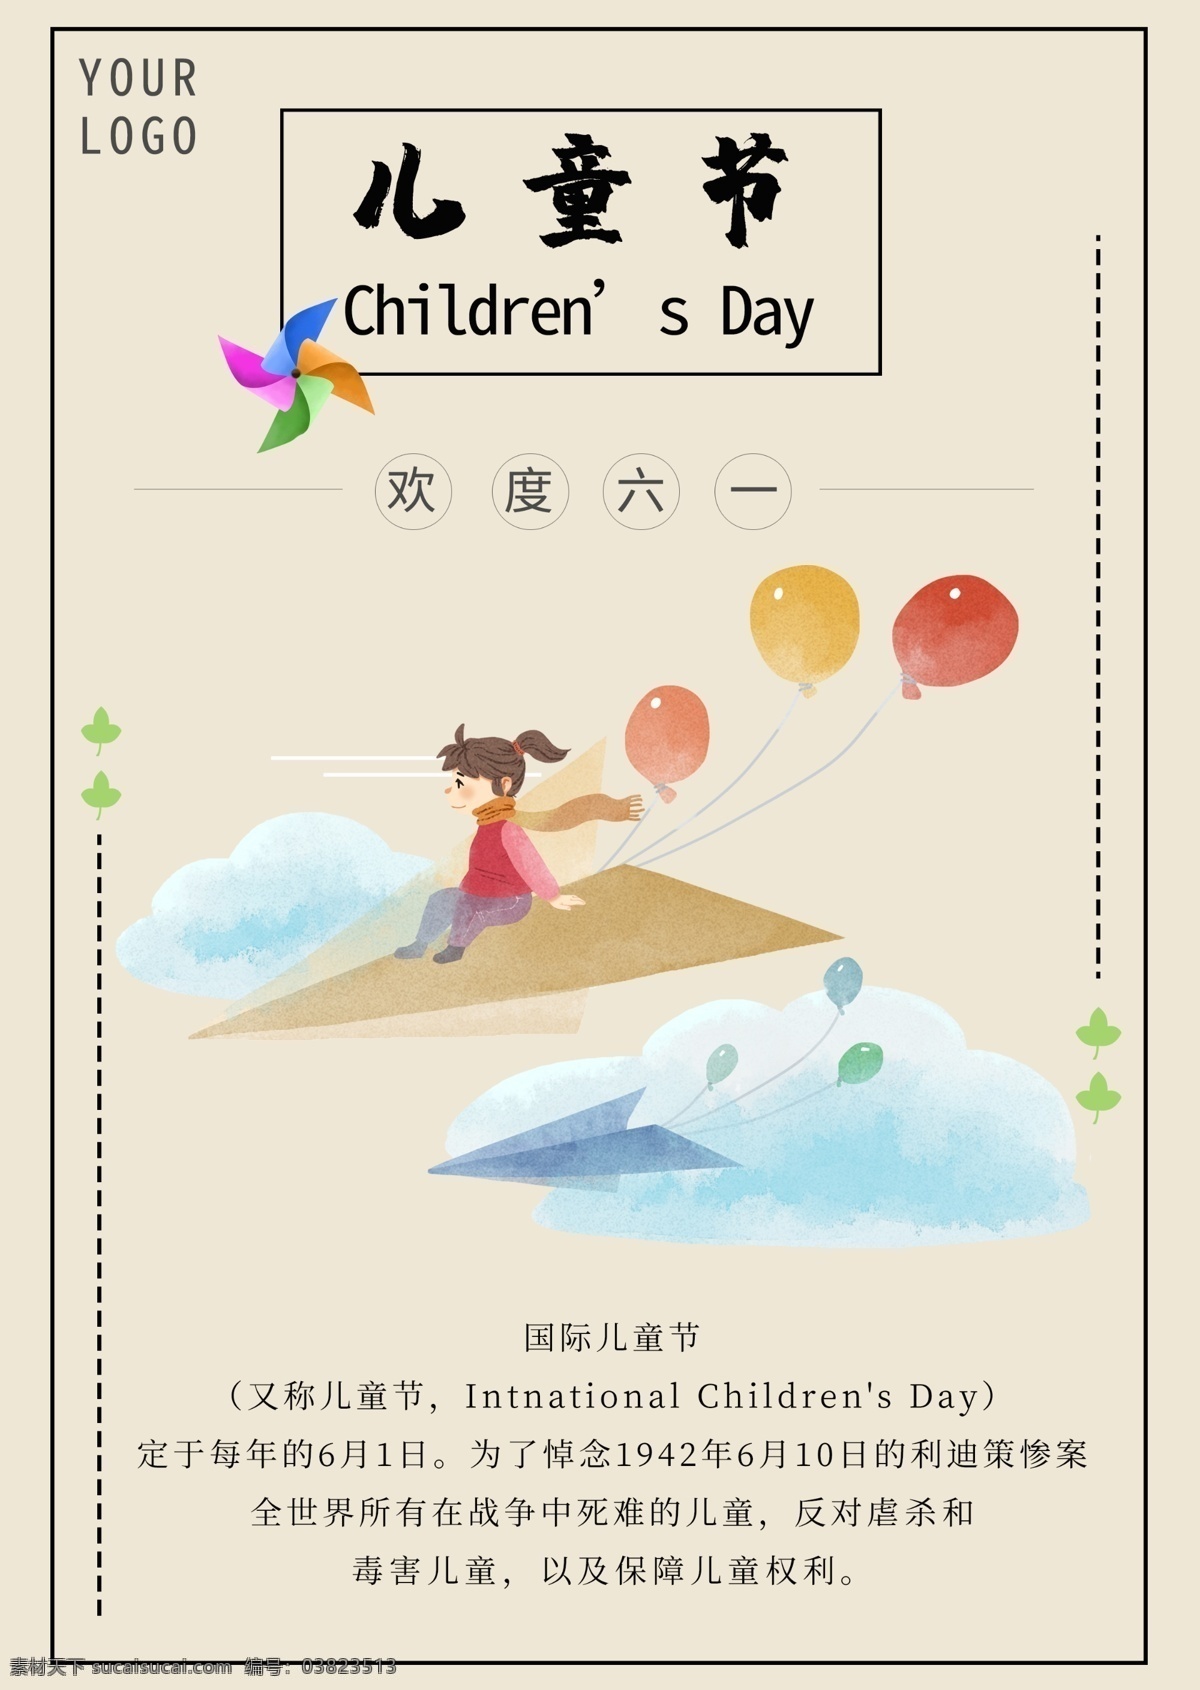 手绘 欢乐 儿童节 海报 中国风 六一 国际儿童节